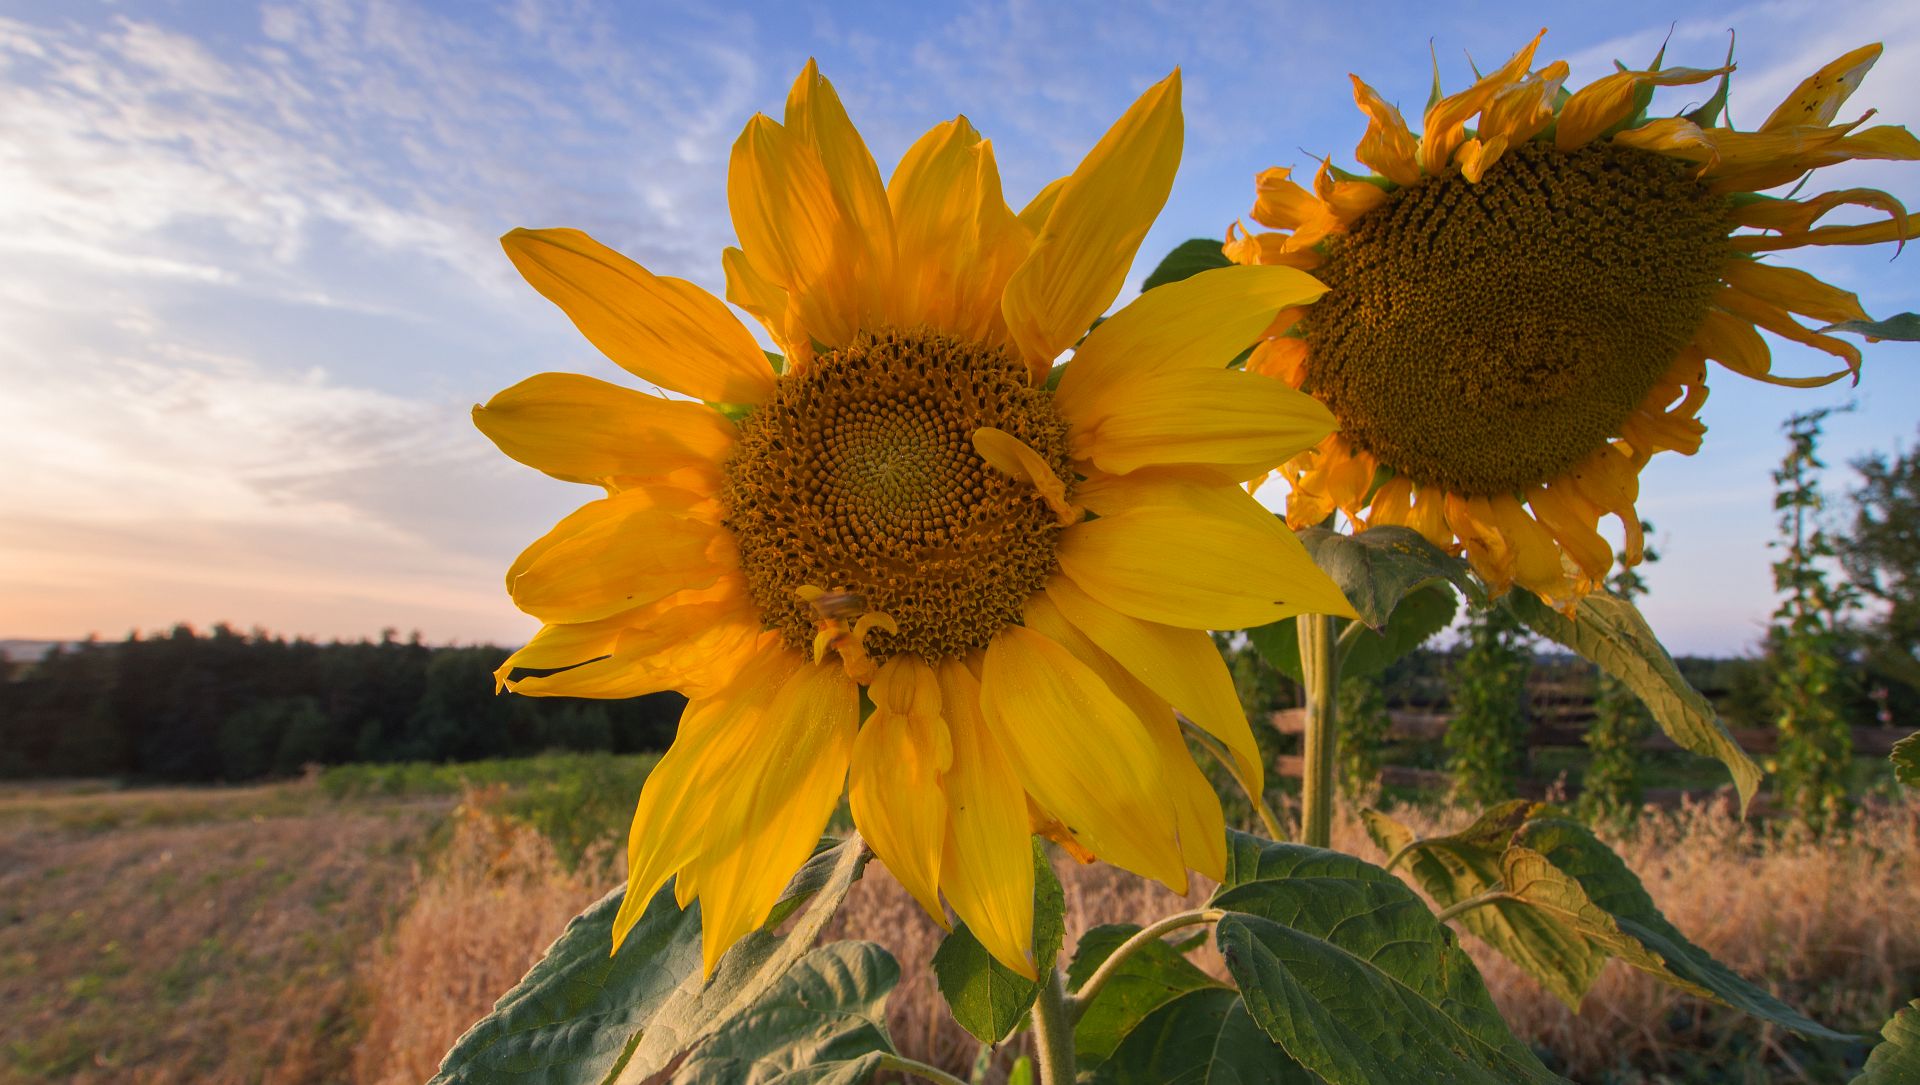 Sunflowers on The Ducherowa Gora